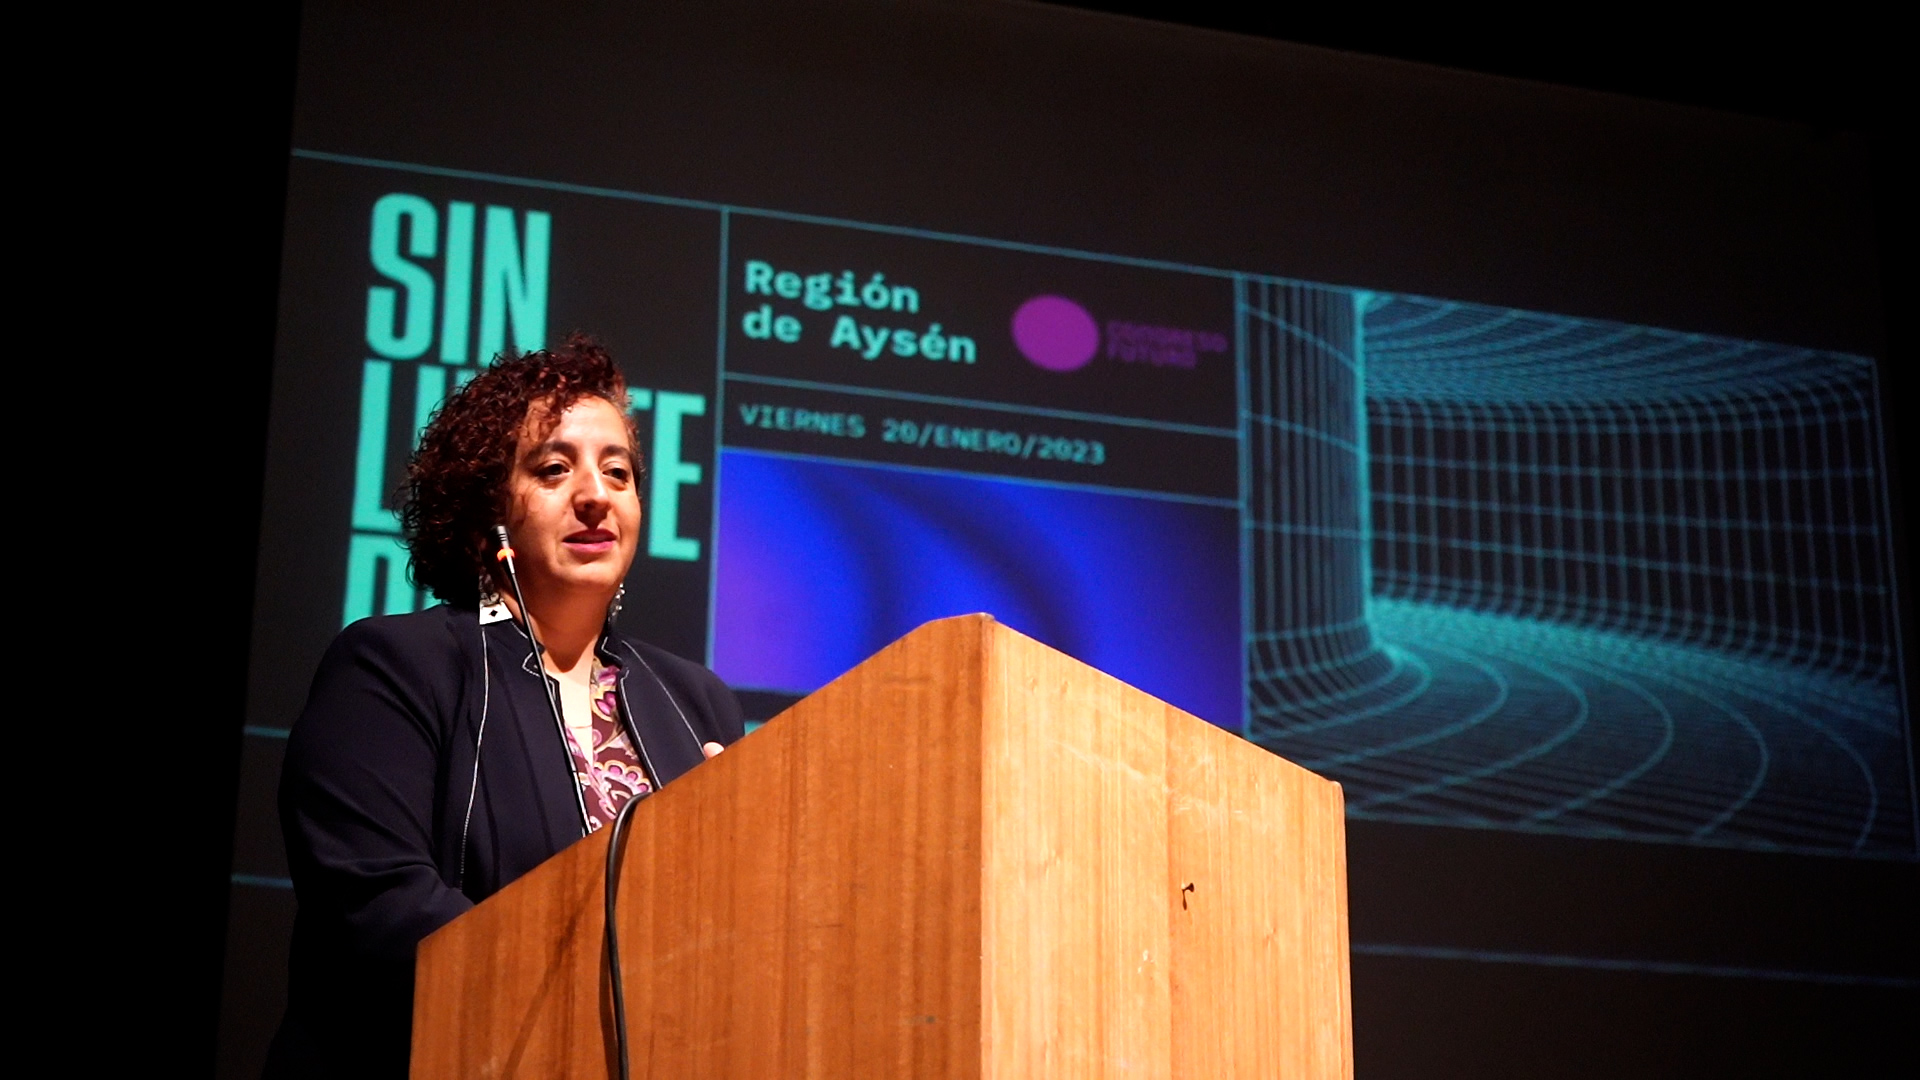 La región de Aysén vivió una nueva versión de Congreso Futuro (Video)